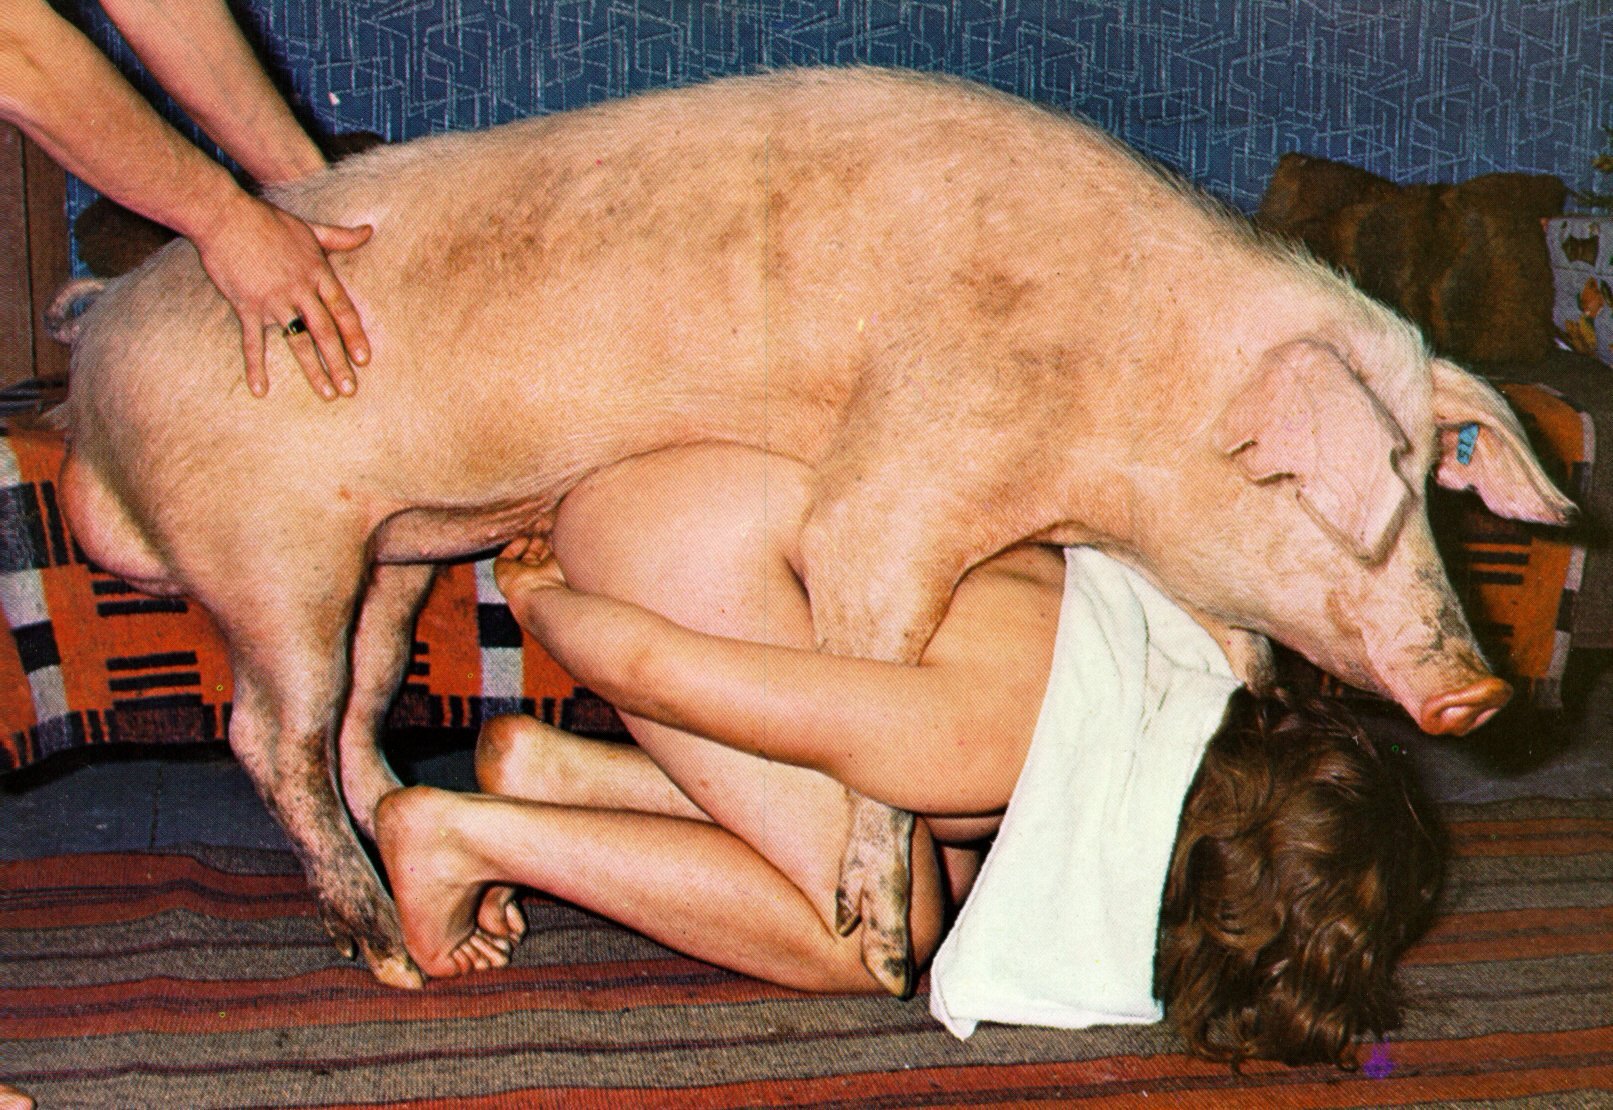 Смотреть порно свиньи